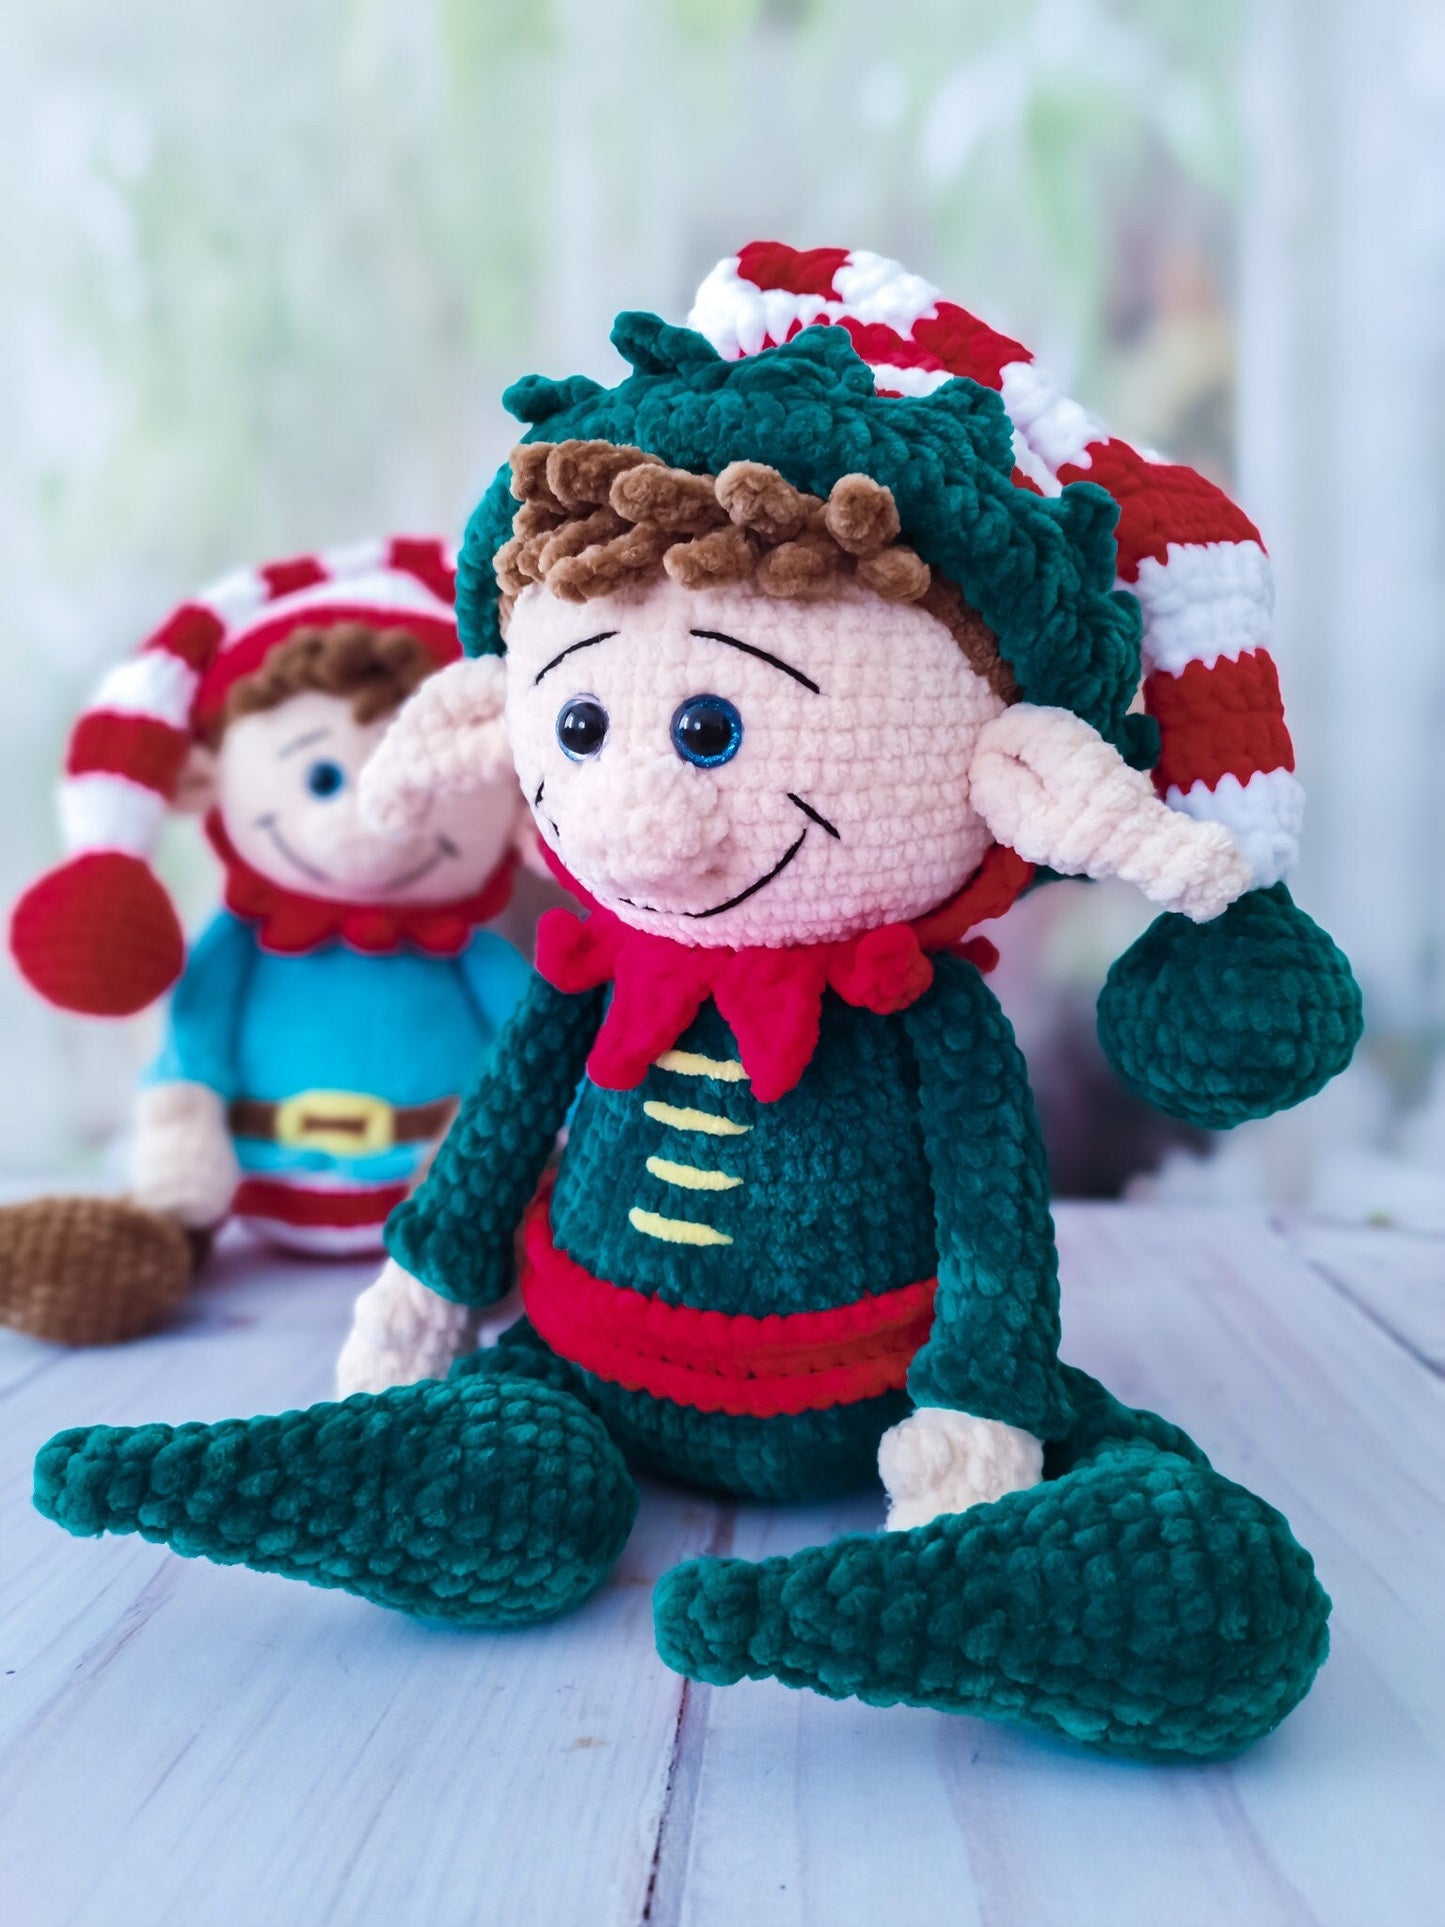 Elf Crochet, Stuffed Elf, Christmas Elf Dolls, Amigurumi Elf, Elf Decor, Elf Boy, Crochet Boy Doll, Christmas Doll, Grandson Gift Elf Plush